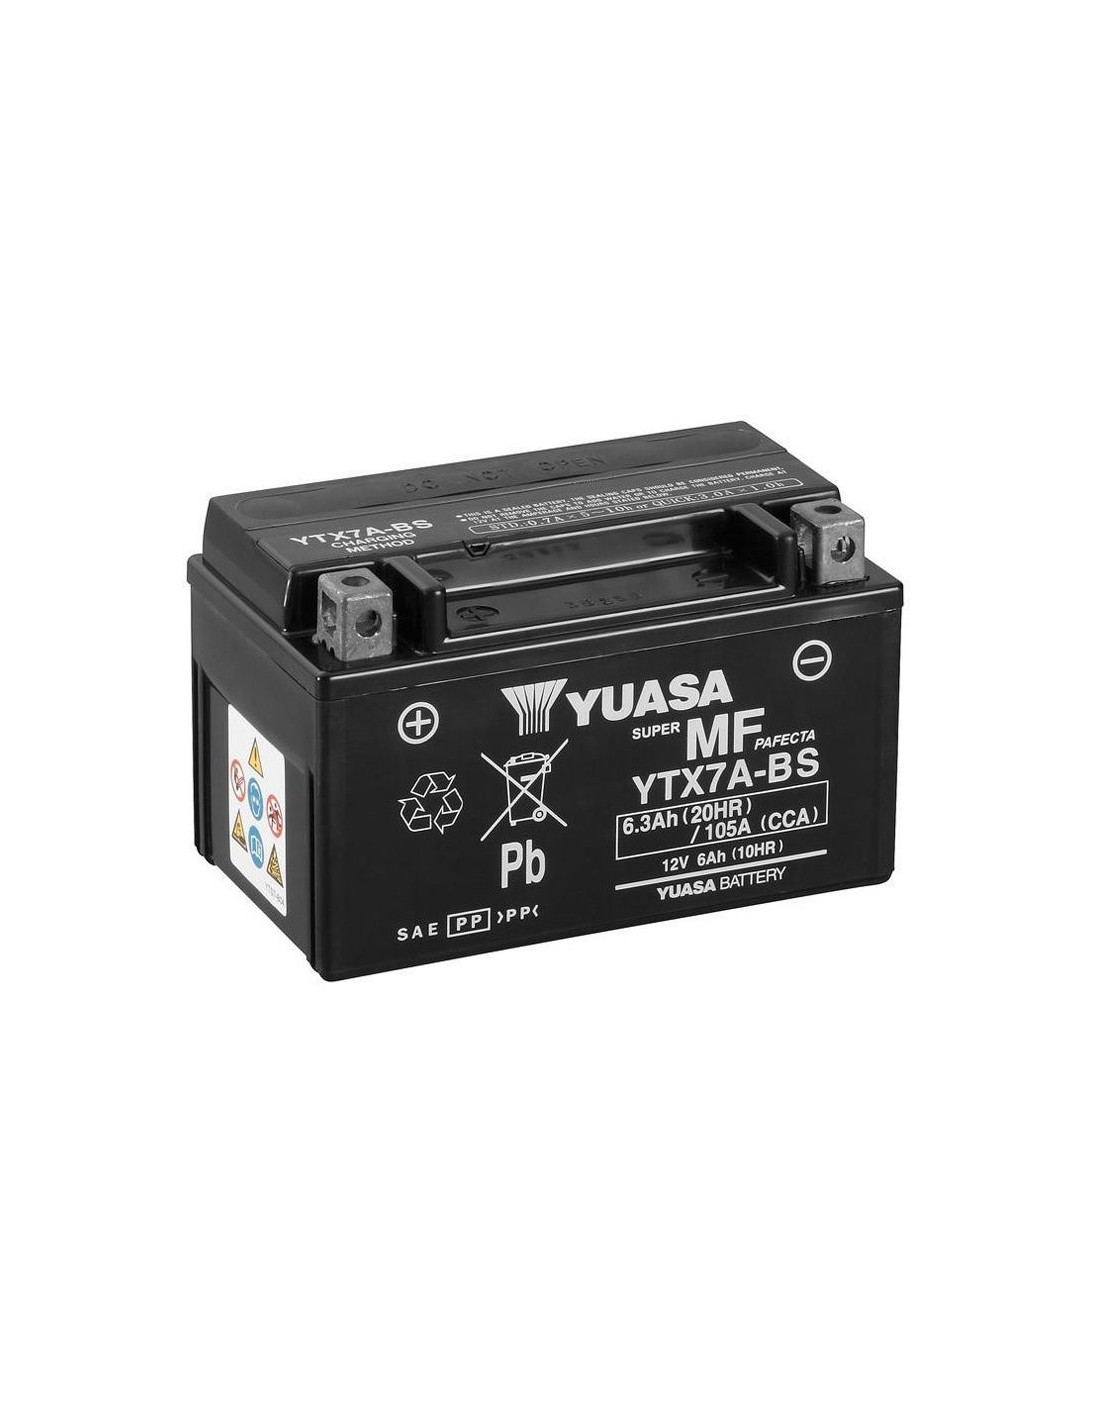 Comprar batería Yuasa YTX7A-BS | Compralubricantes.com